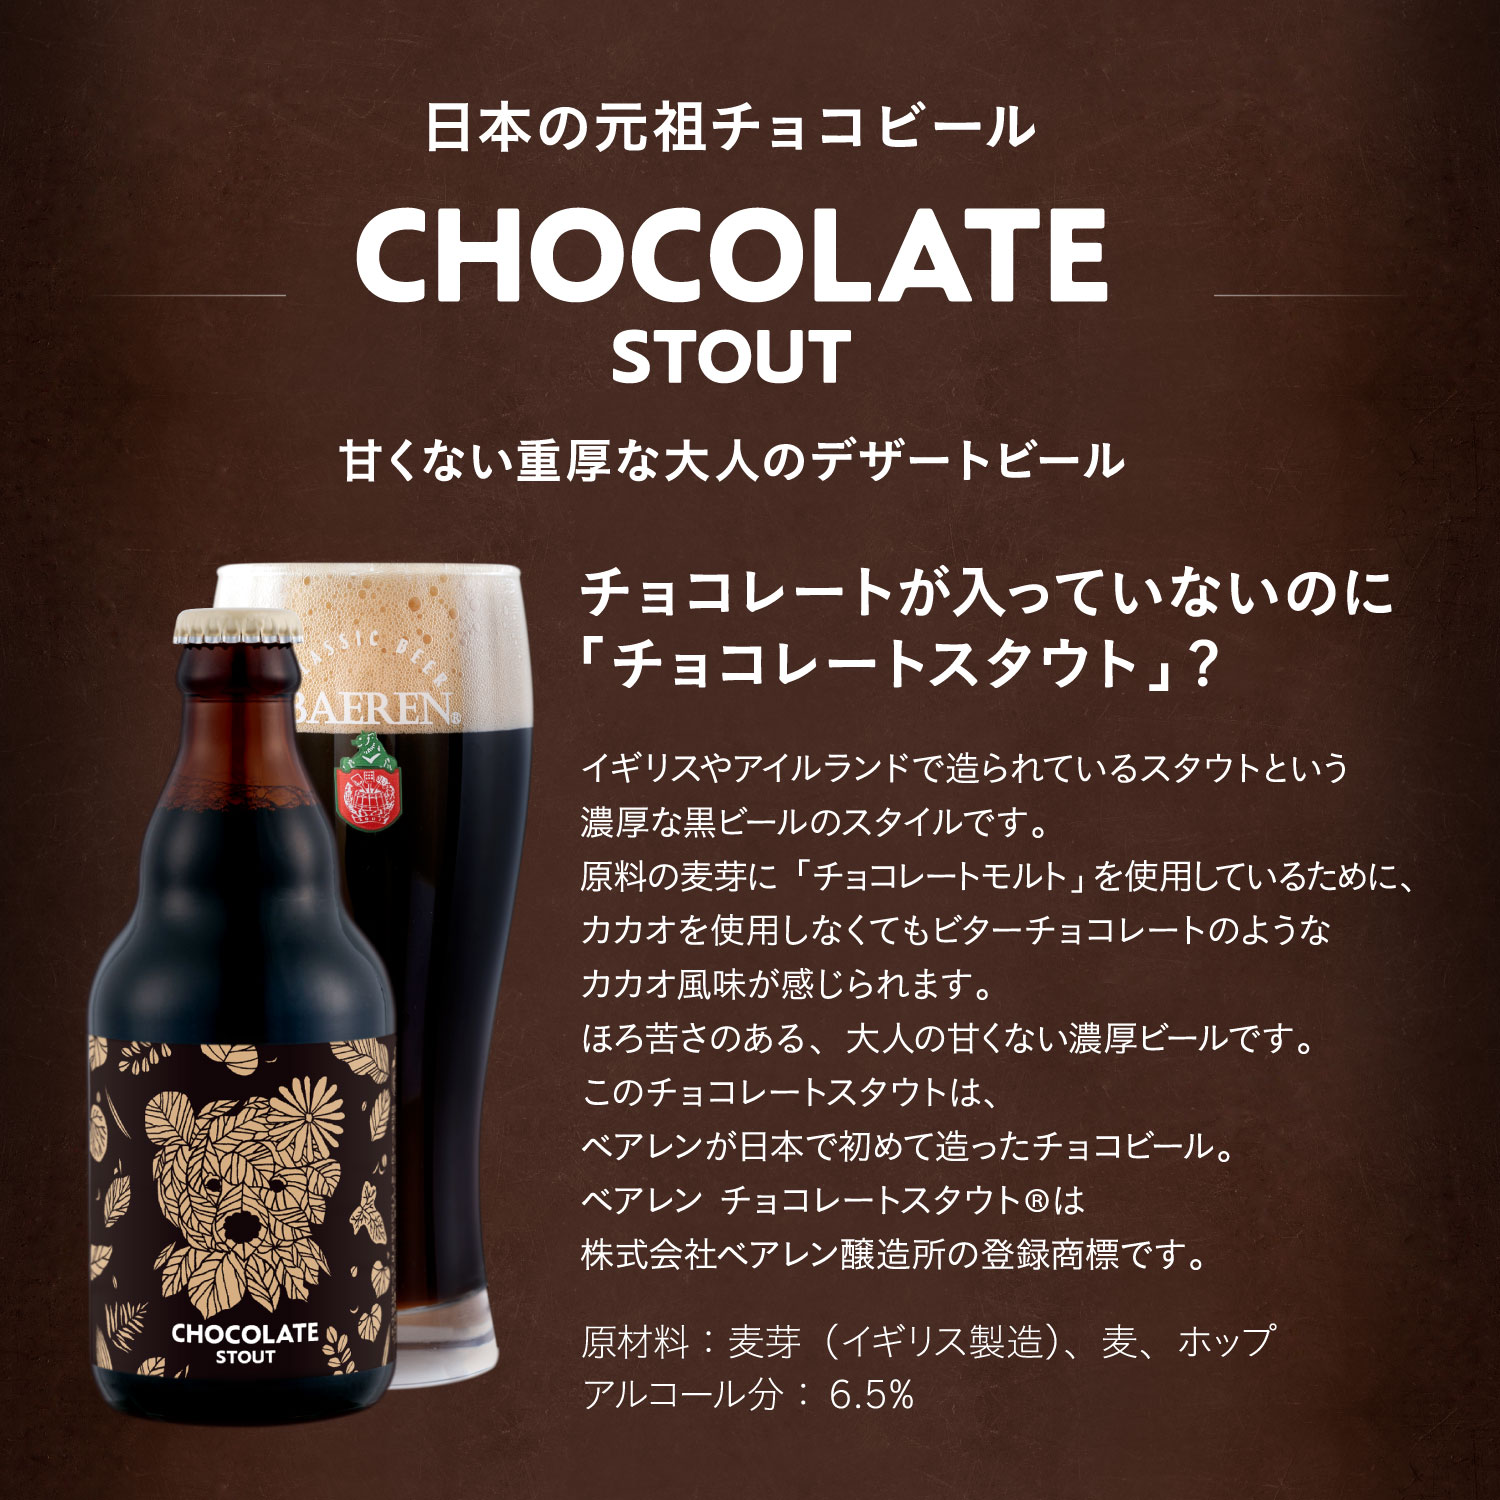 日本の元祖チョコビール チョコレートスタウト（CHOCOLATE STOUT）甘くない重厚な大人のデザートビール チョコレートが入っていないのに「チョコレートスタウト?」イギリスやアイルランドで造られているスタウトという濃厚な黒ビールのスタイルです。原料の麦芽に「チョコレートモルト」を使用しているために、カカオを使用しなくてもビターチョコレートのようなカカオ風味が感じられます。ほろ苦さのある、大人の甘くない濃厚ビールです。原材料：麦芽（イギリス製造）、麦、ホップ。アルコール分：6.5%。